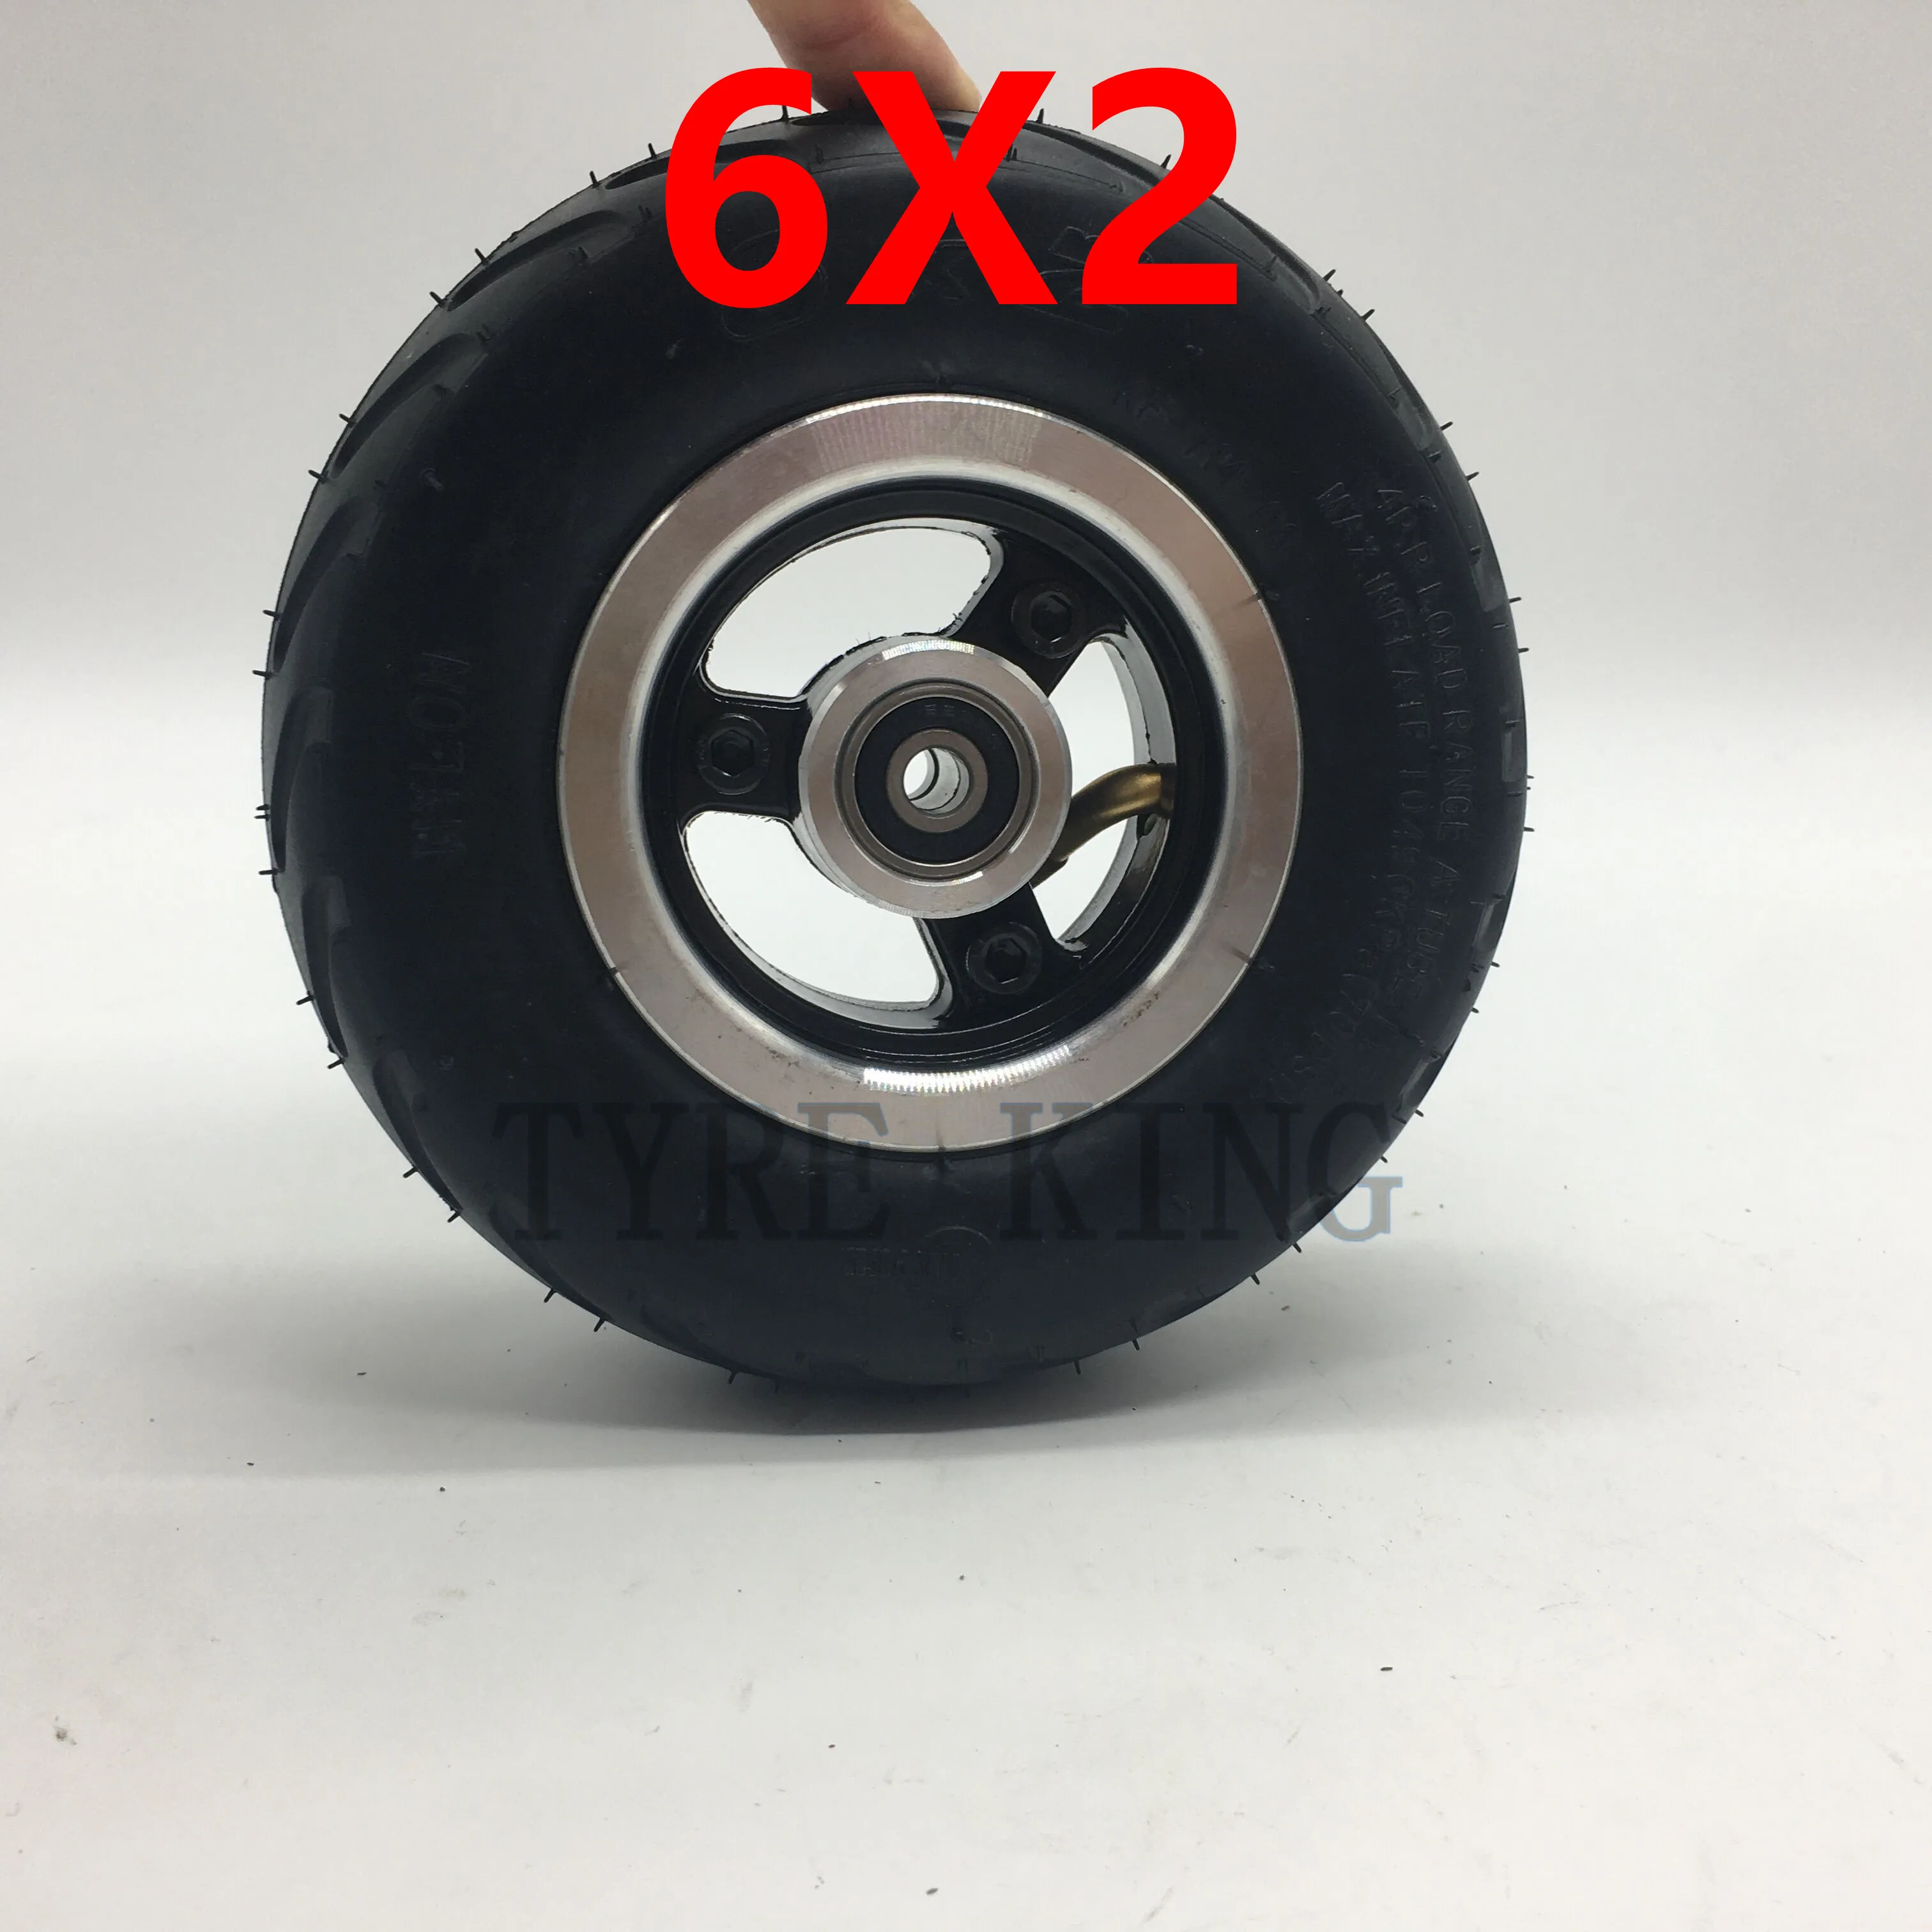 6 дюймов Solid Wheel 6x2 Пневматическая внутренняя камера Внешняя шина Колесо для мини-электрического скутера Кресло Грузовик F0 Пневматическая тележка 5